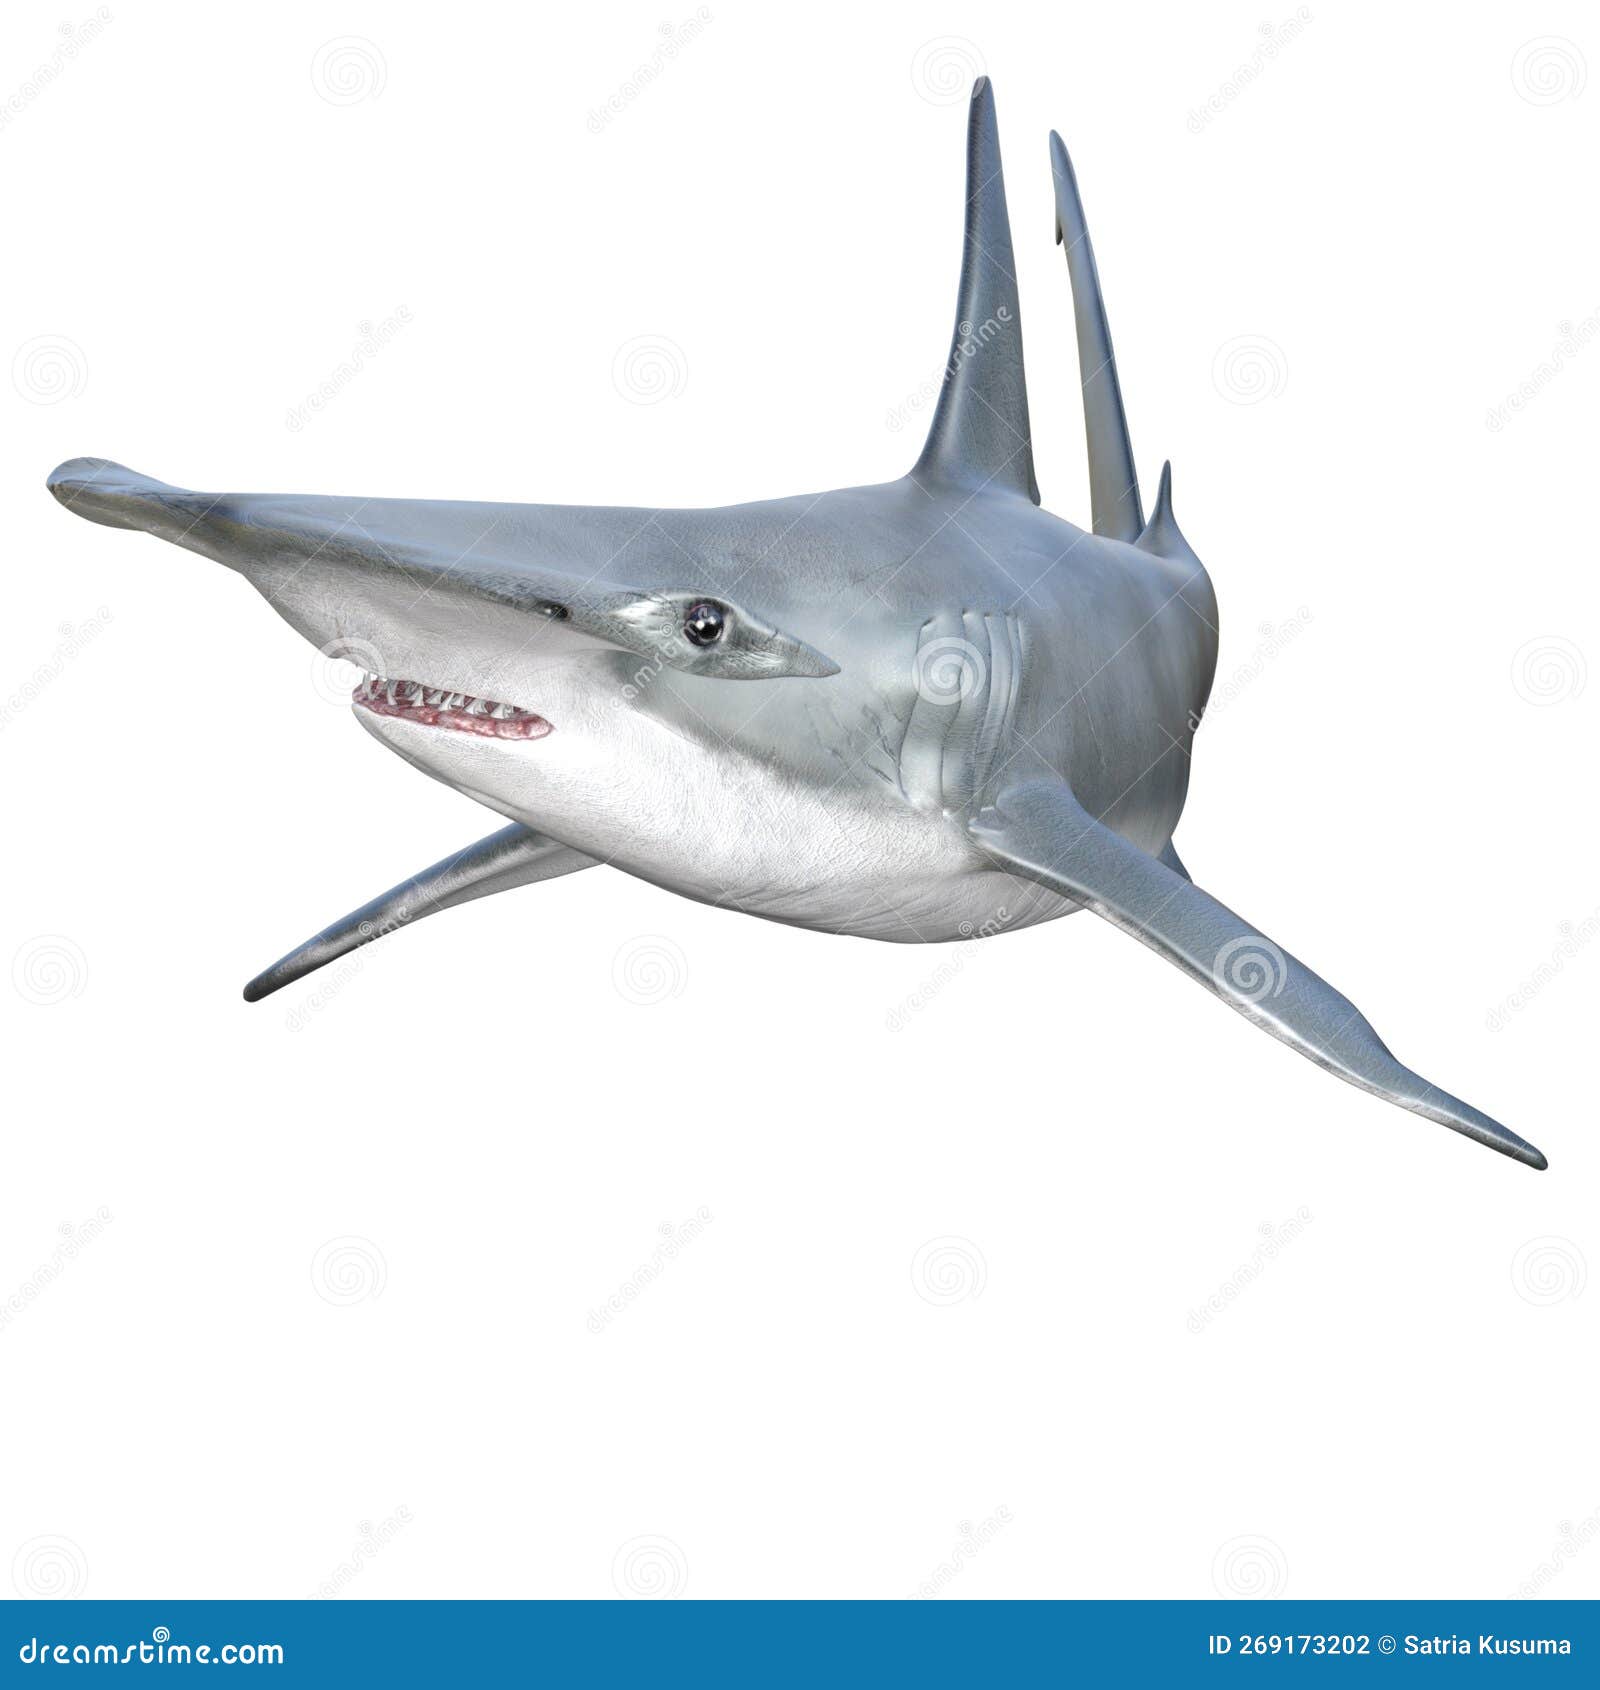 3D Rendering Hammerhead Shark On White Stock Photo | CartoonDealer.com ...